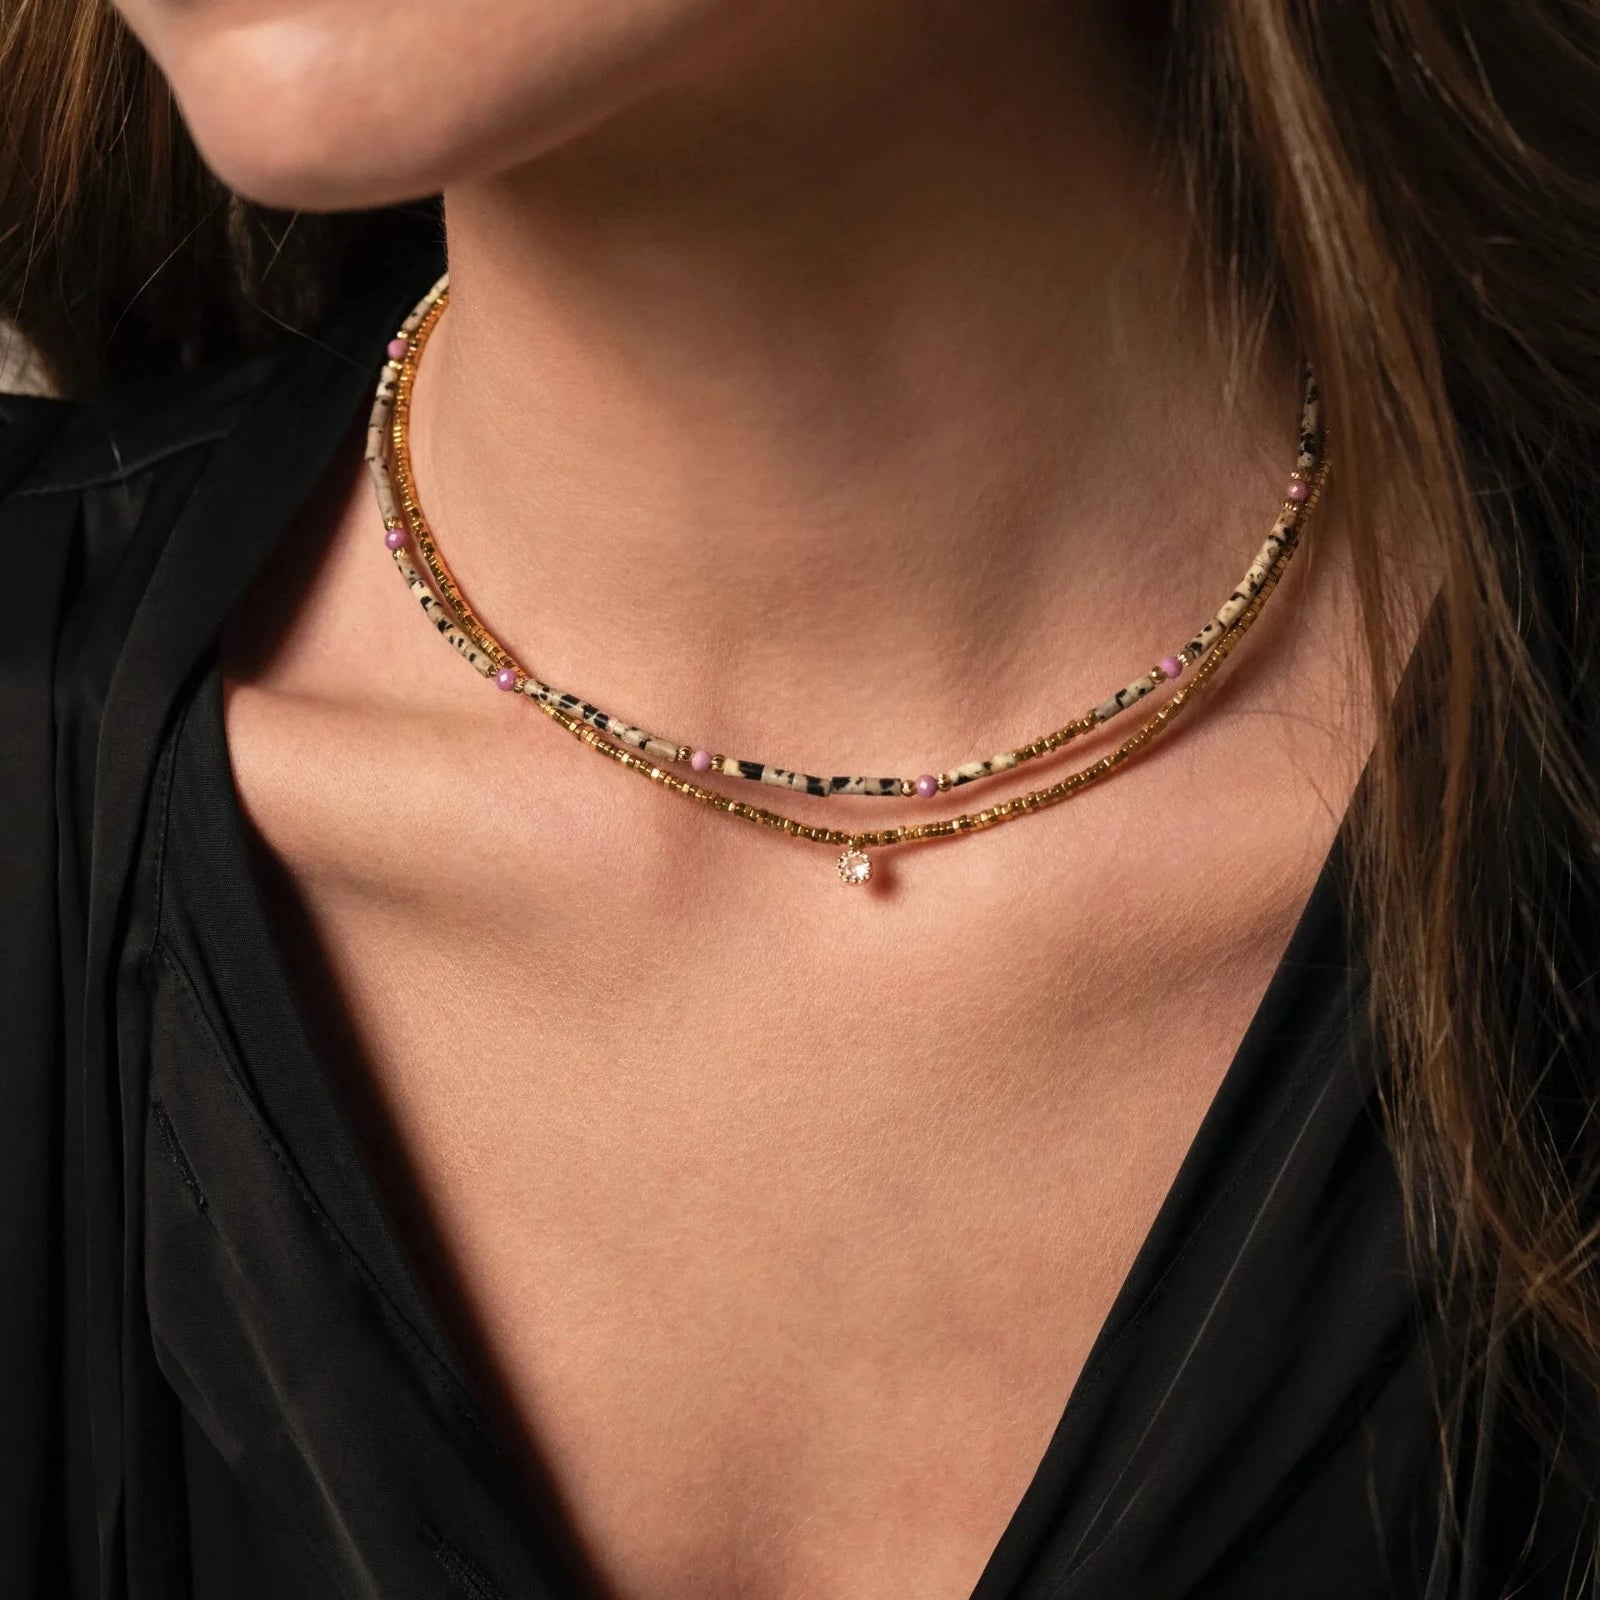 Femme portant deux colliers artisanaux ras de cou en perles multicolores et en or et strass